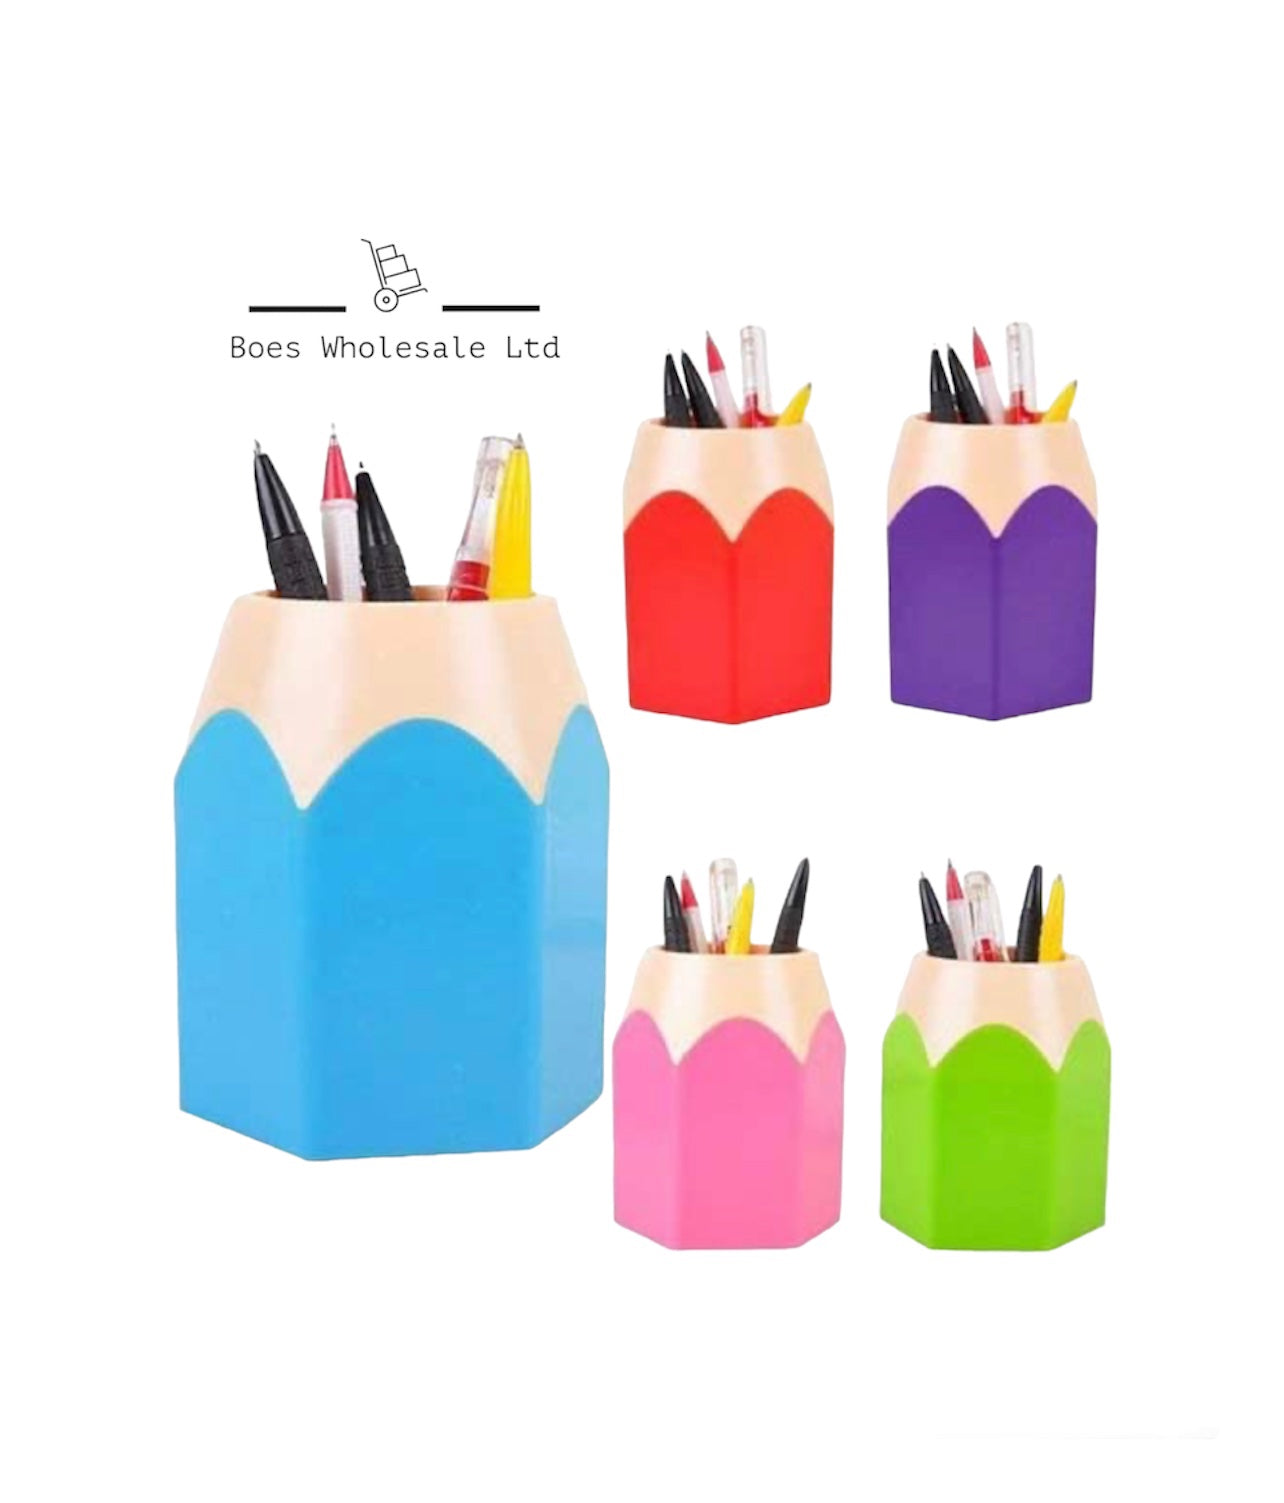 Pencil shaped pen/pencil pots